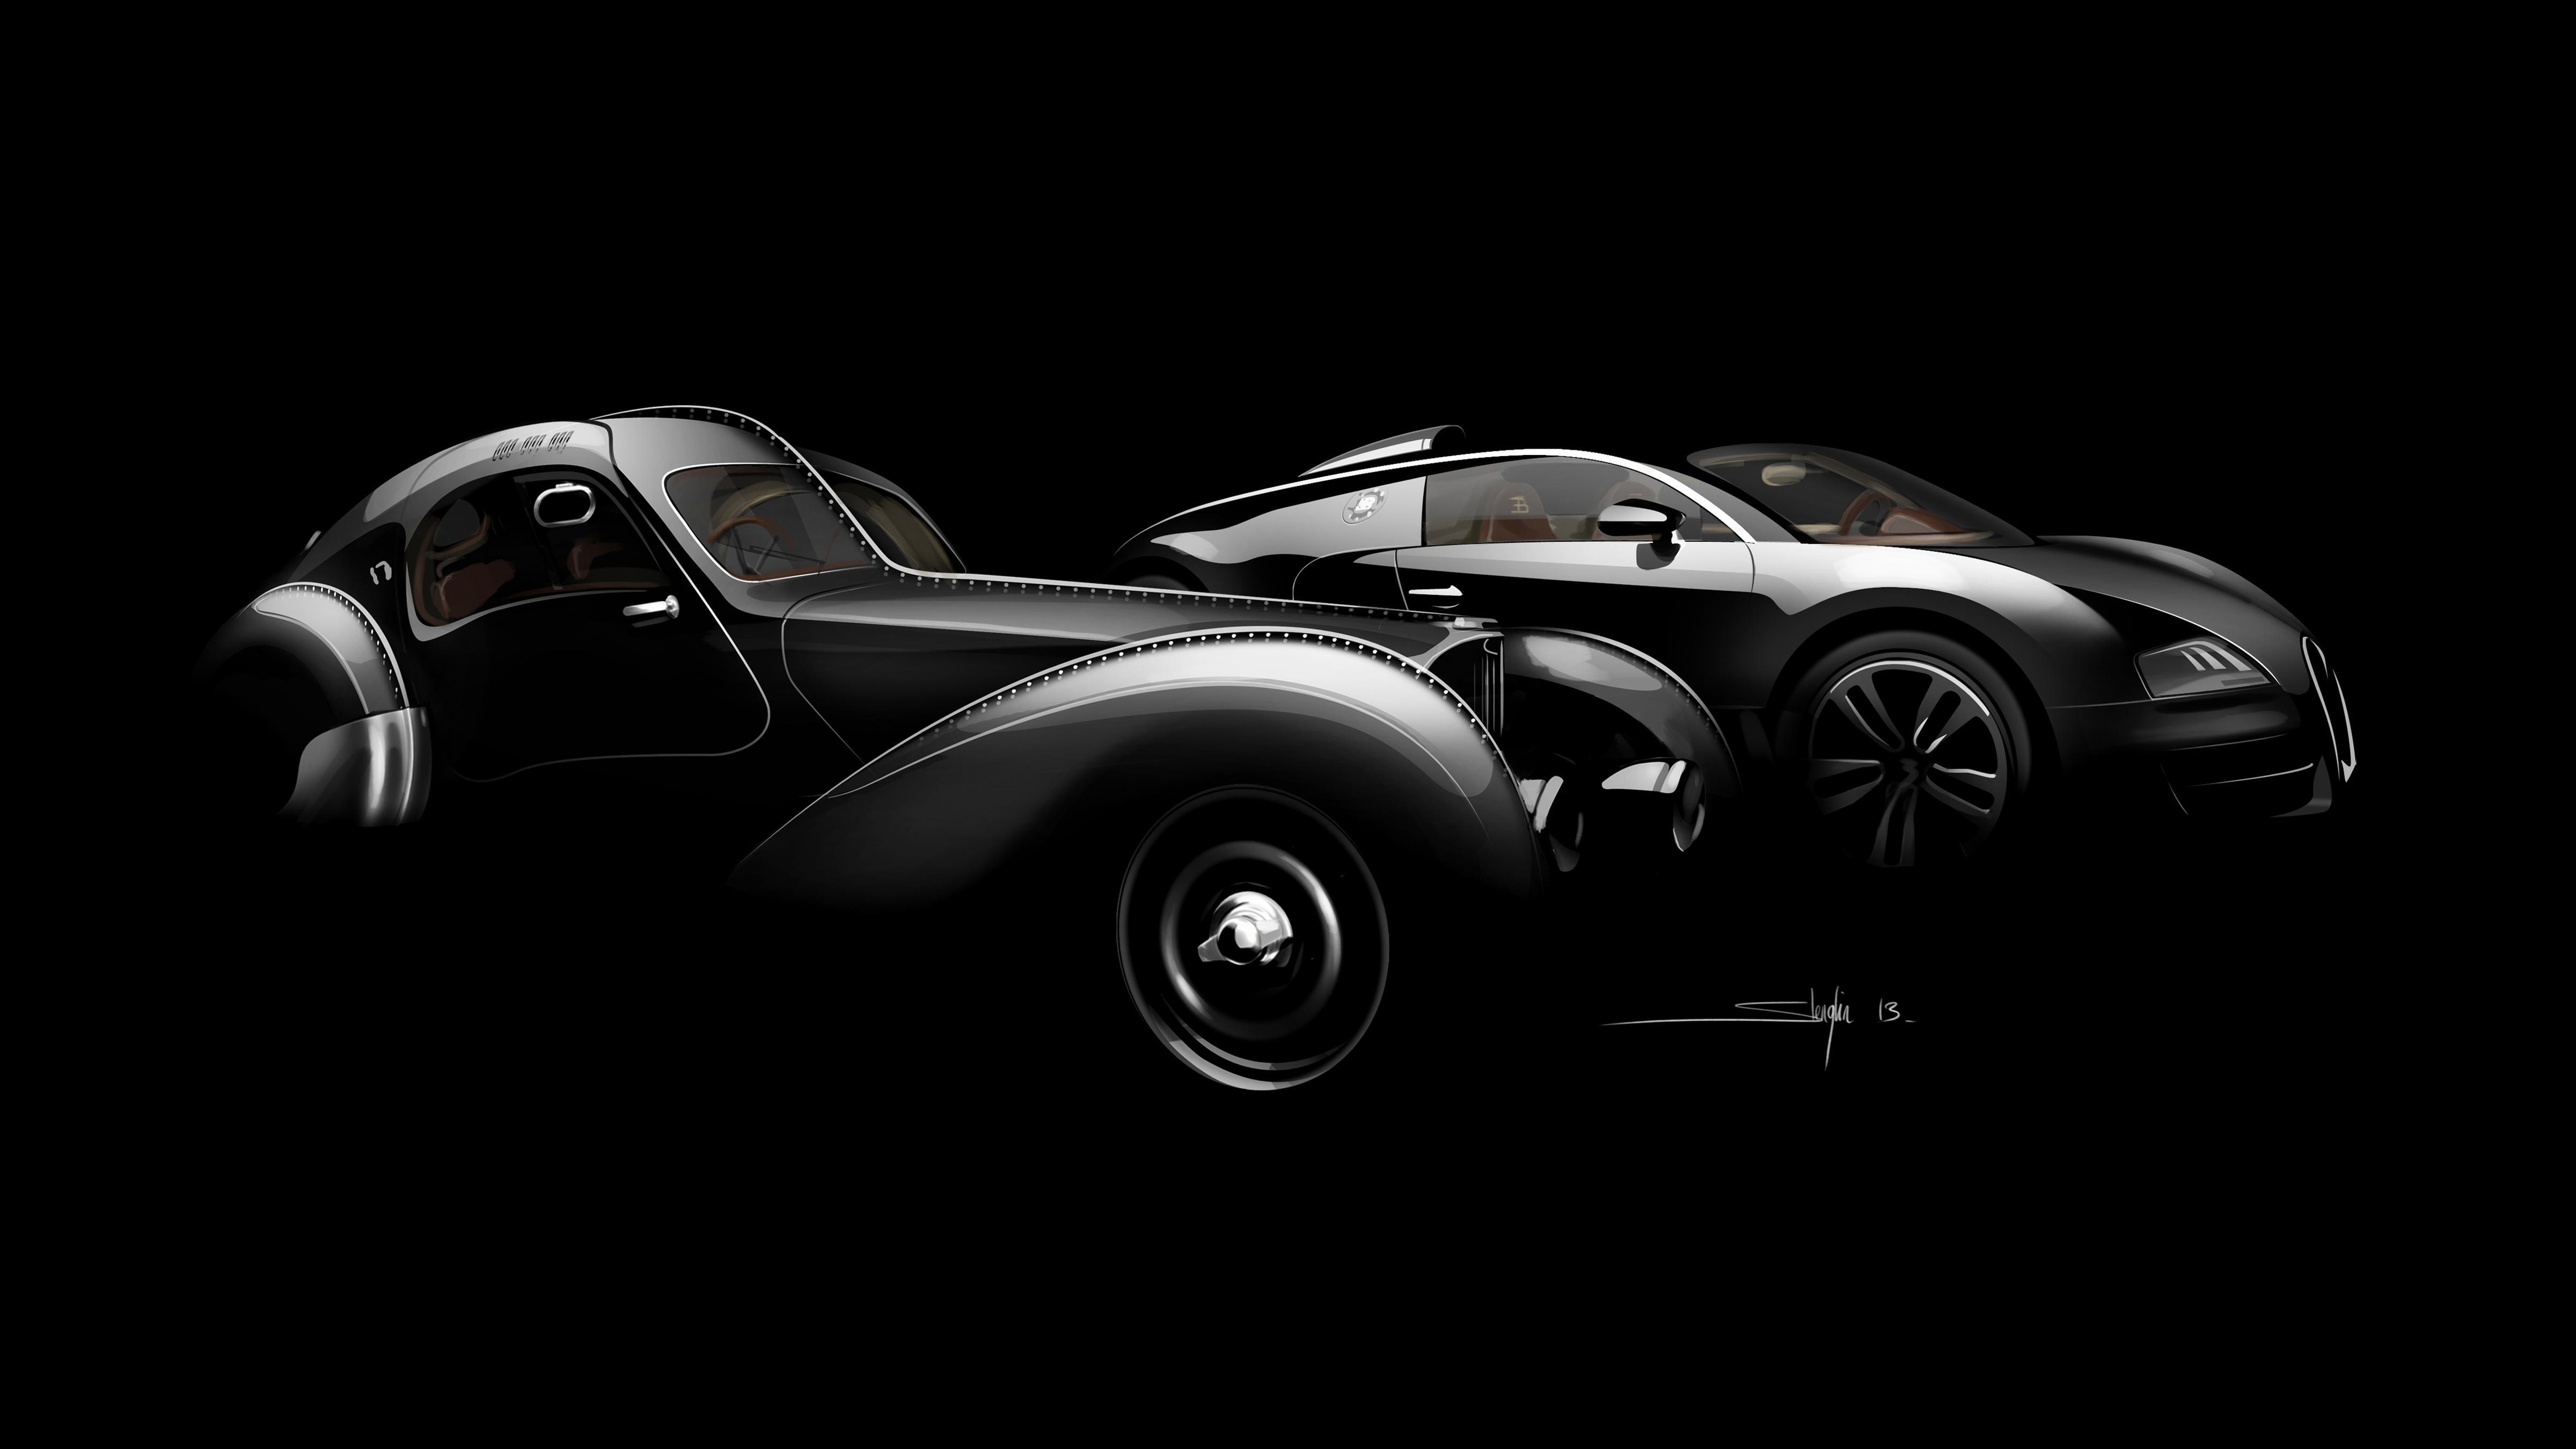 4800 x 2700 · jpeg - Bugatti La Voiture Noire Wallpapers - Wallpaper Cave